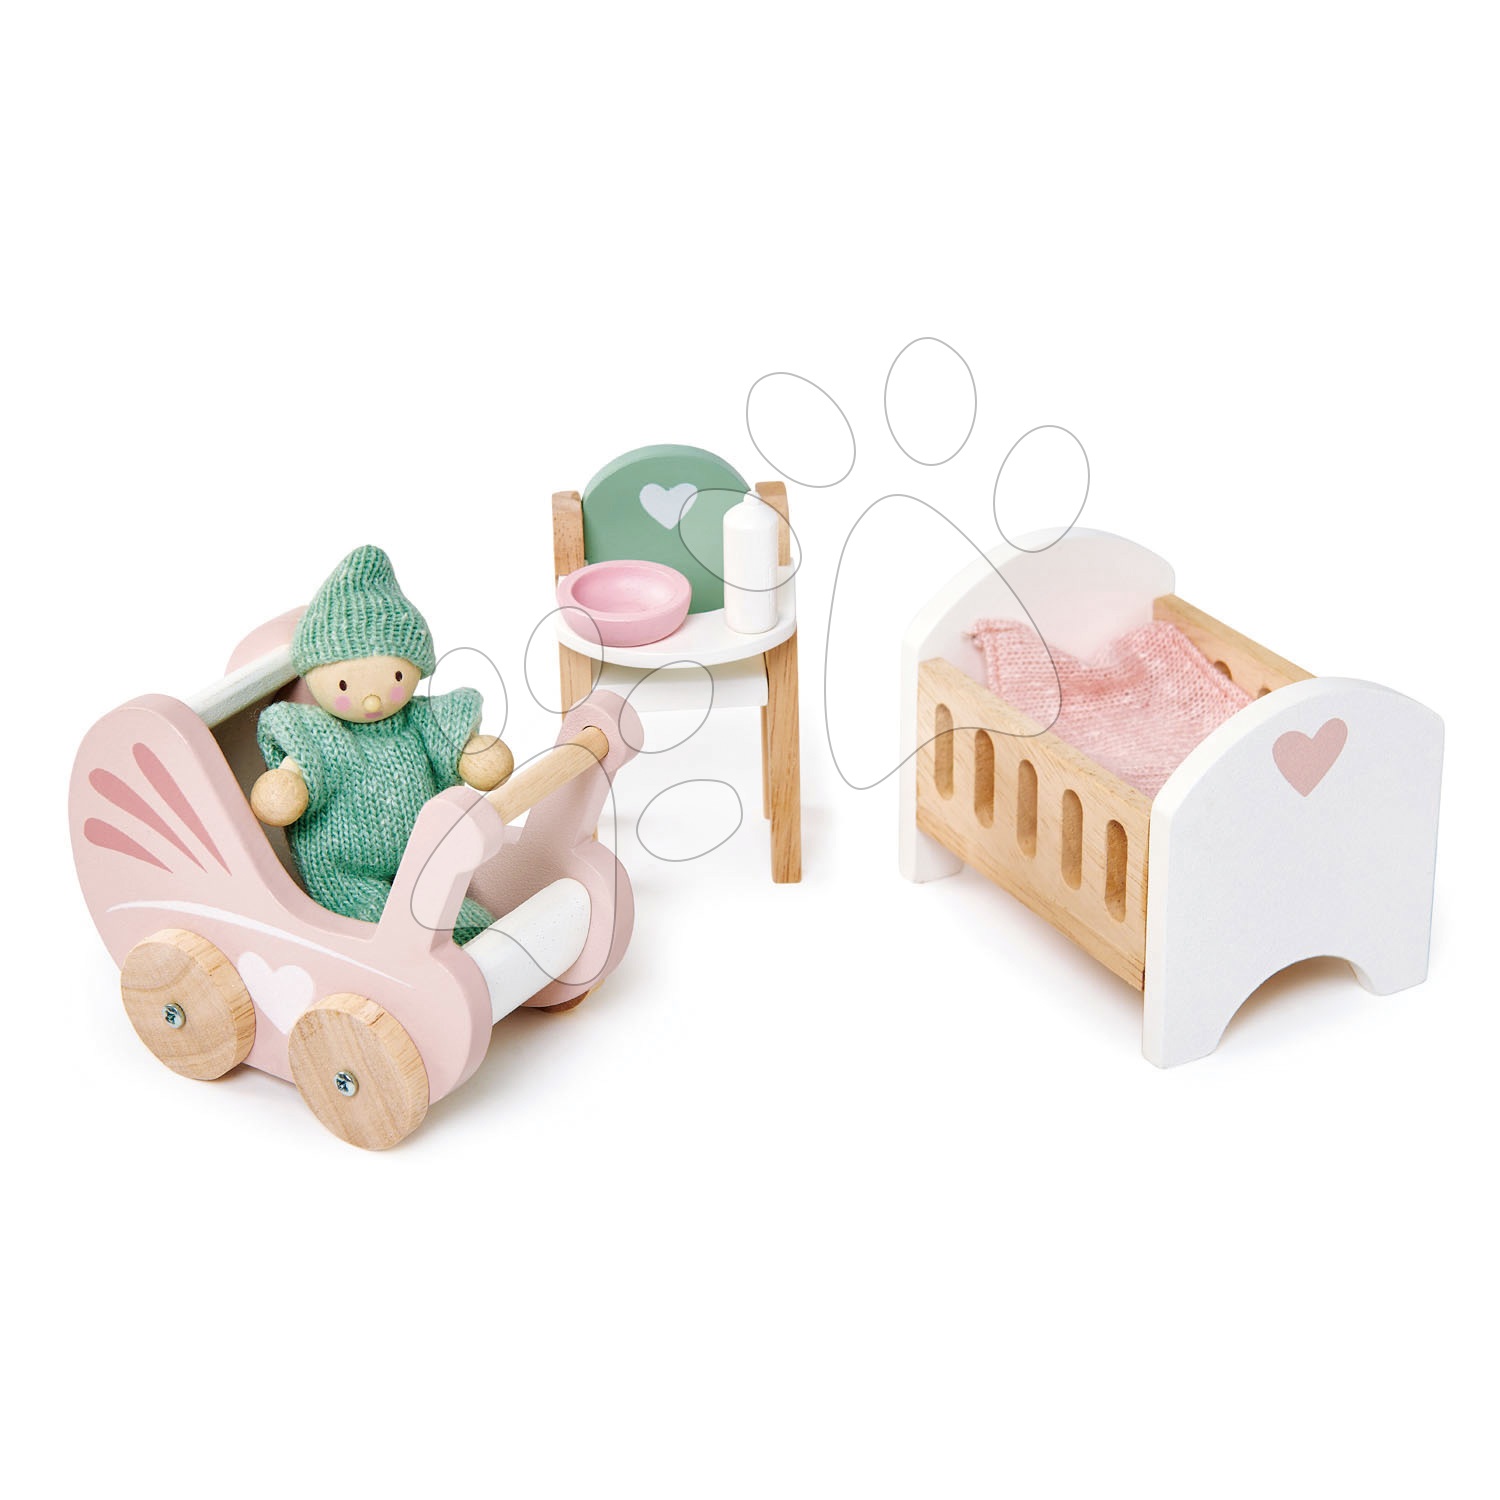 Drevená izba pre bábätko Dovetail Nursery Set Tender Leaf Toys s postavičkou v dupačkách